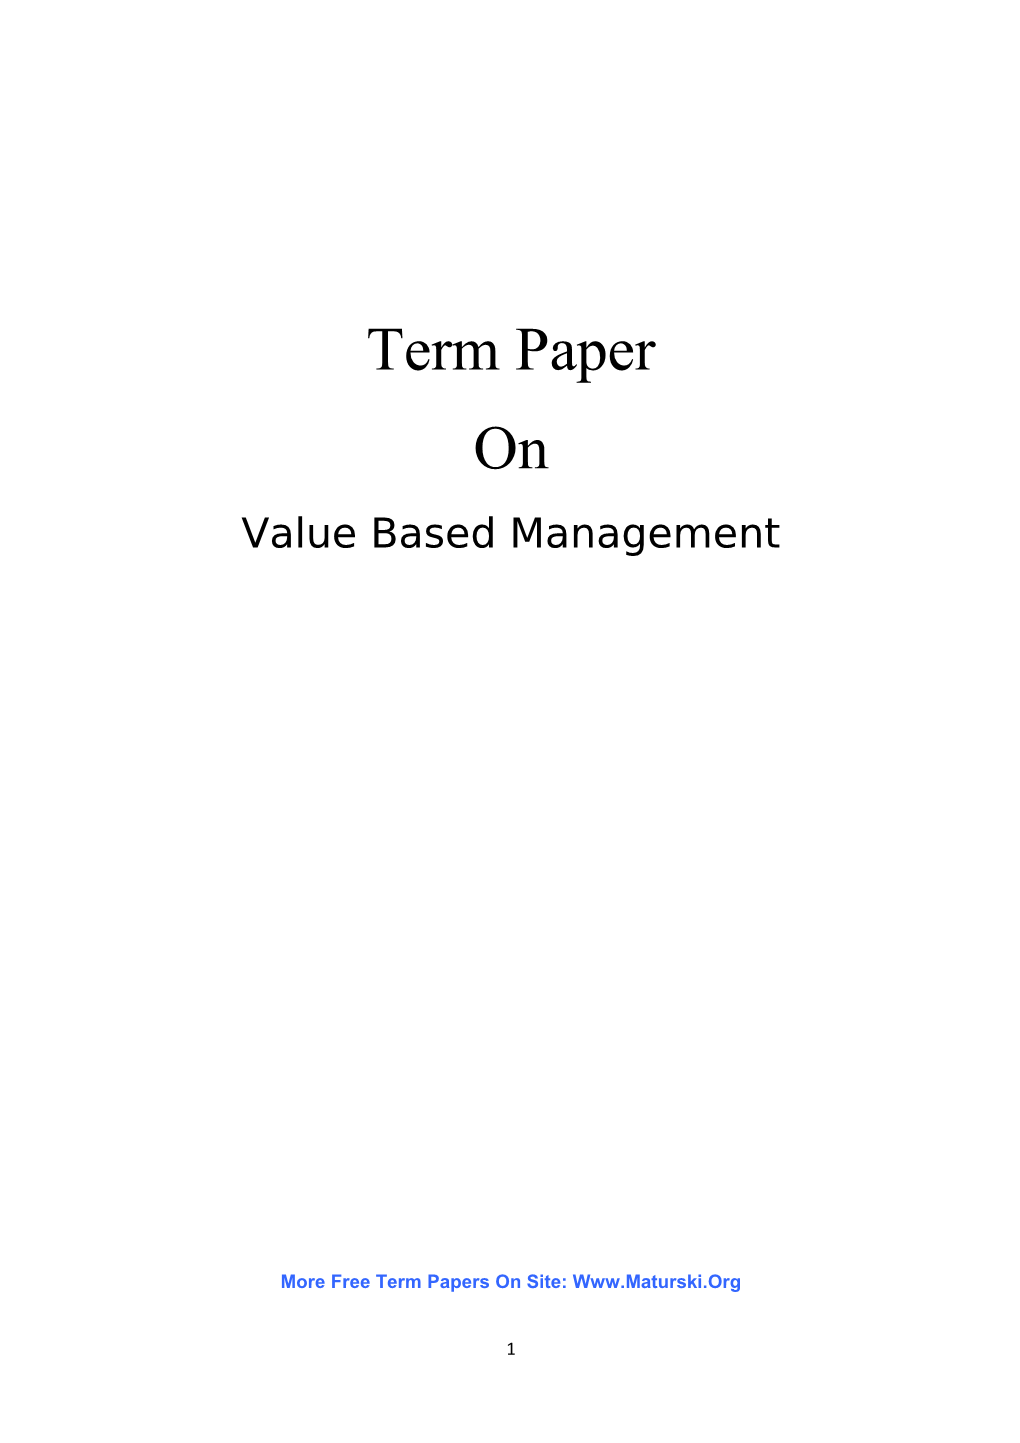 Value - Based Management